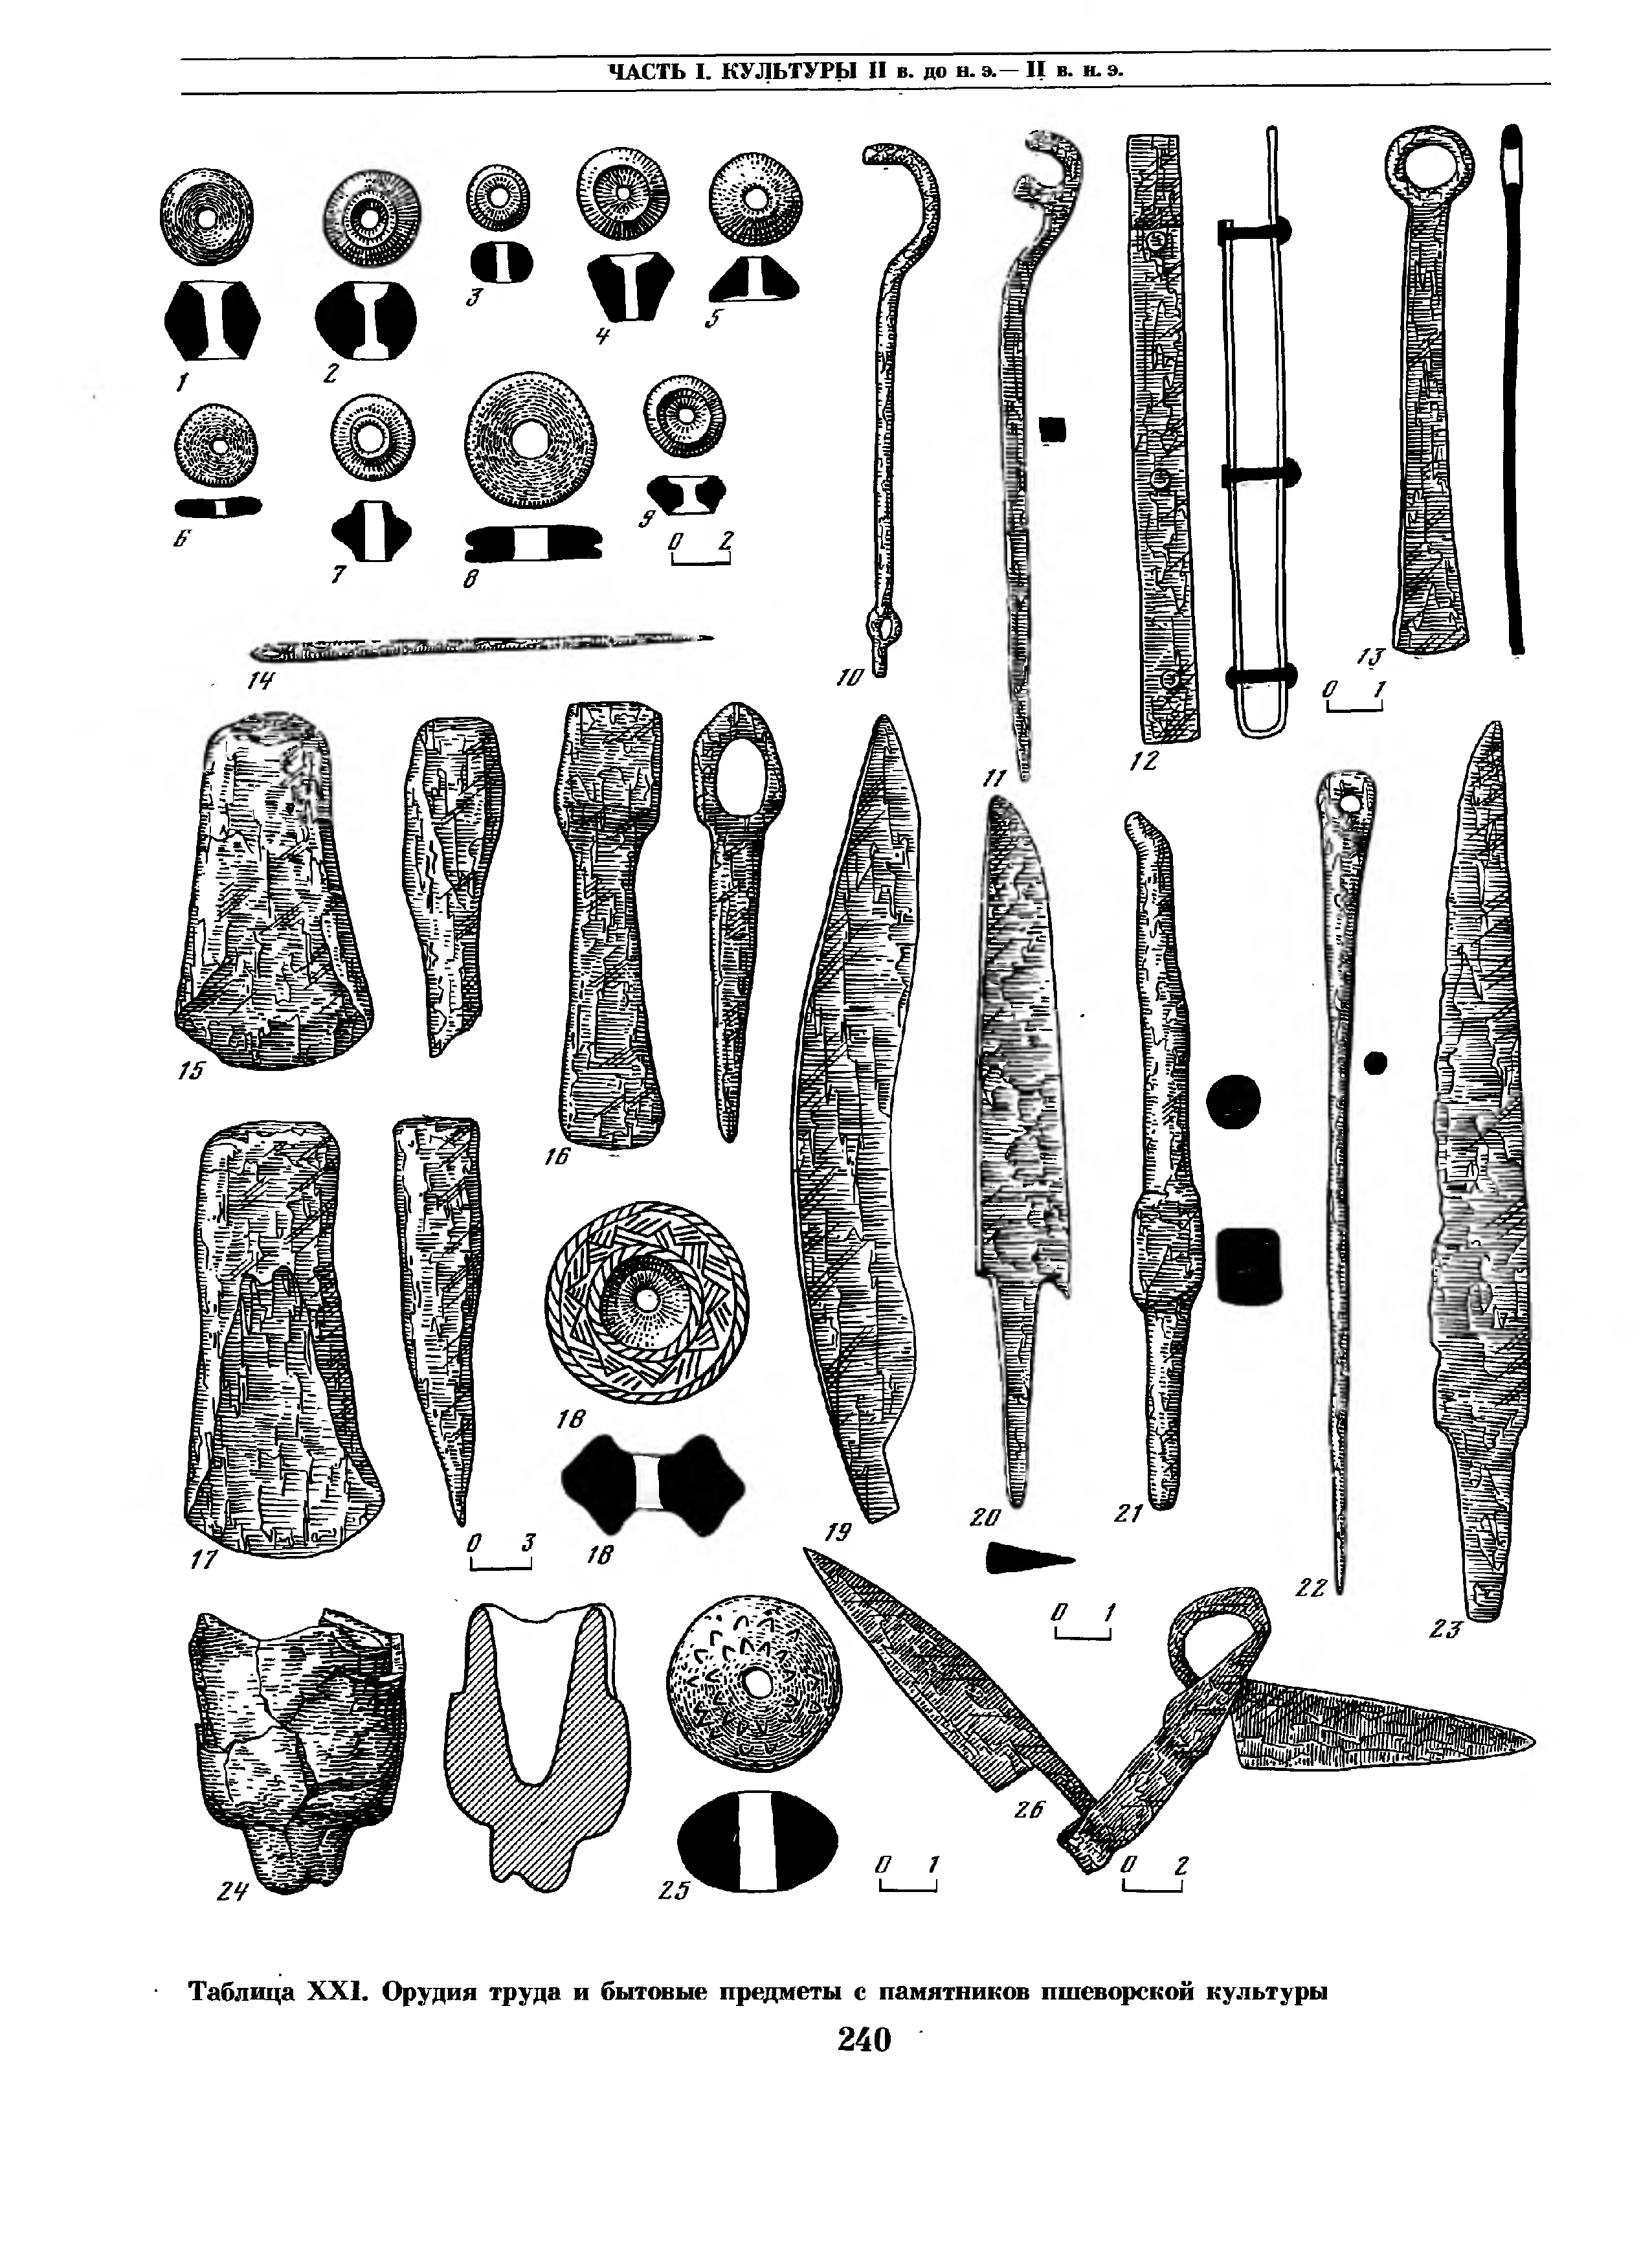 Тагарская археологическая культура